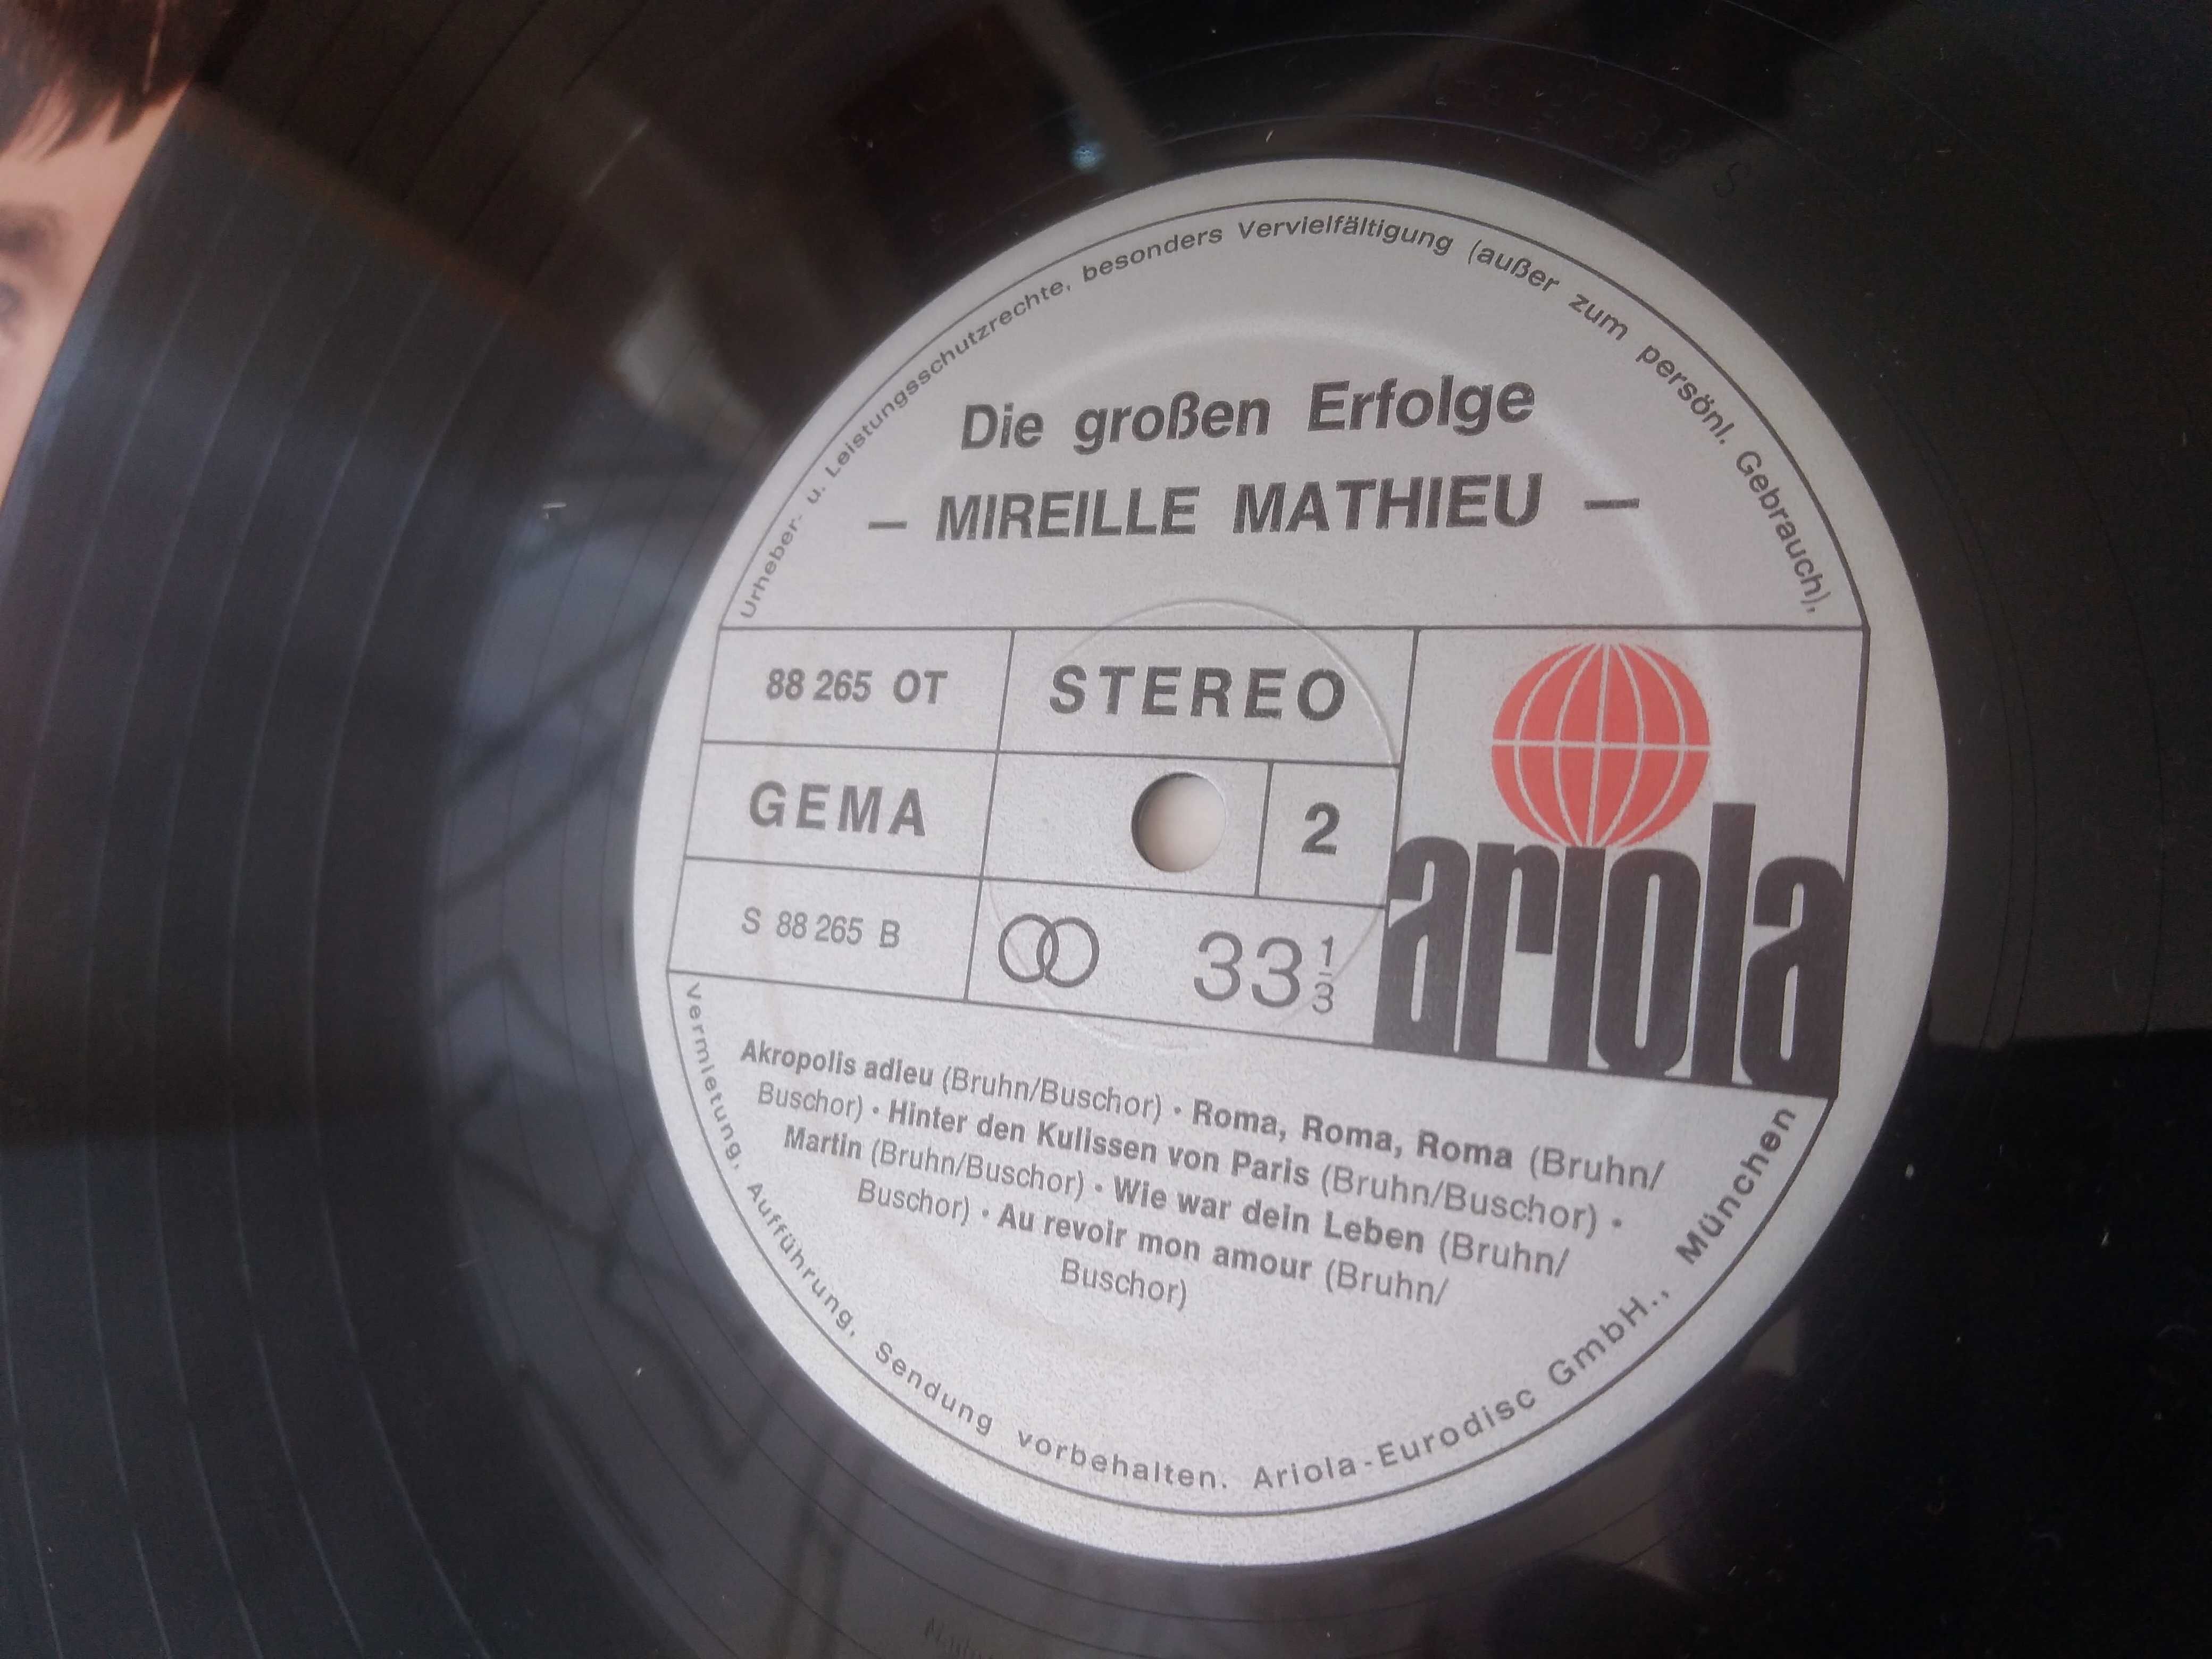 Płyta winylowa Mireille Mathieu die groben erfolge